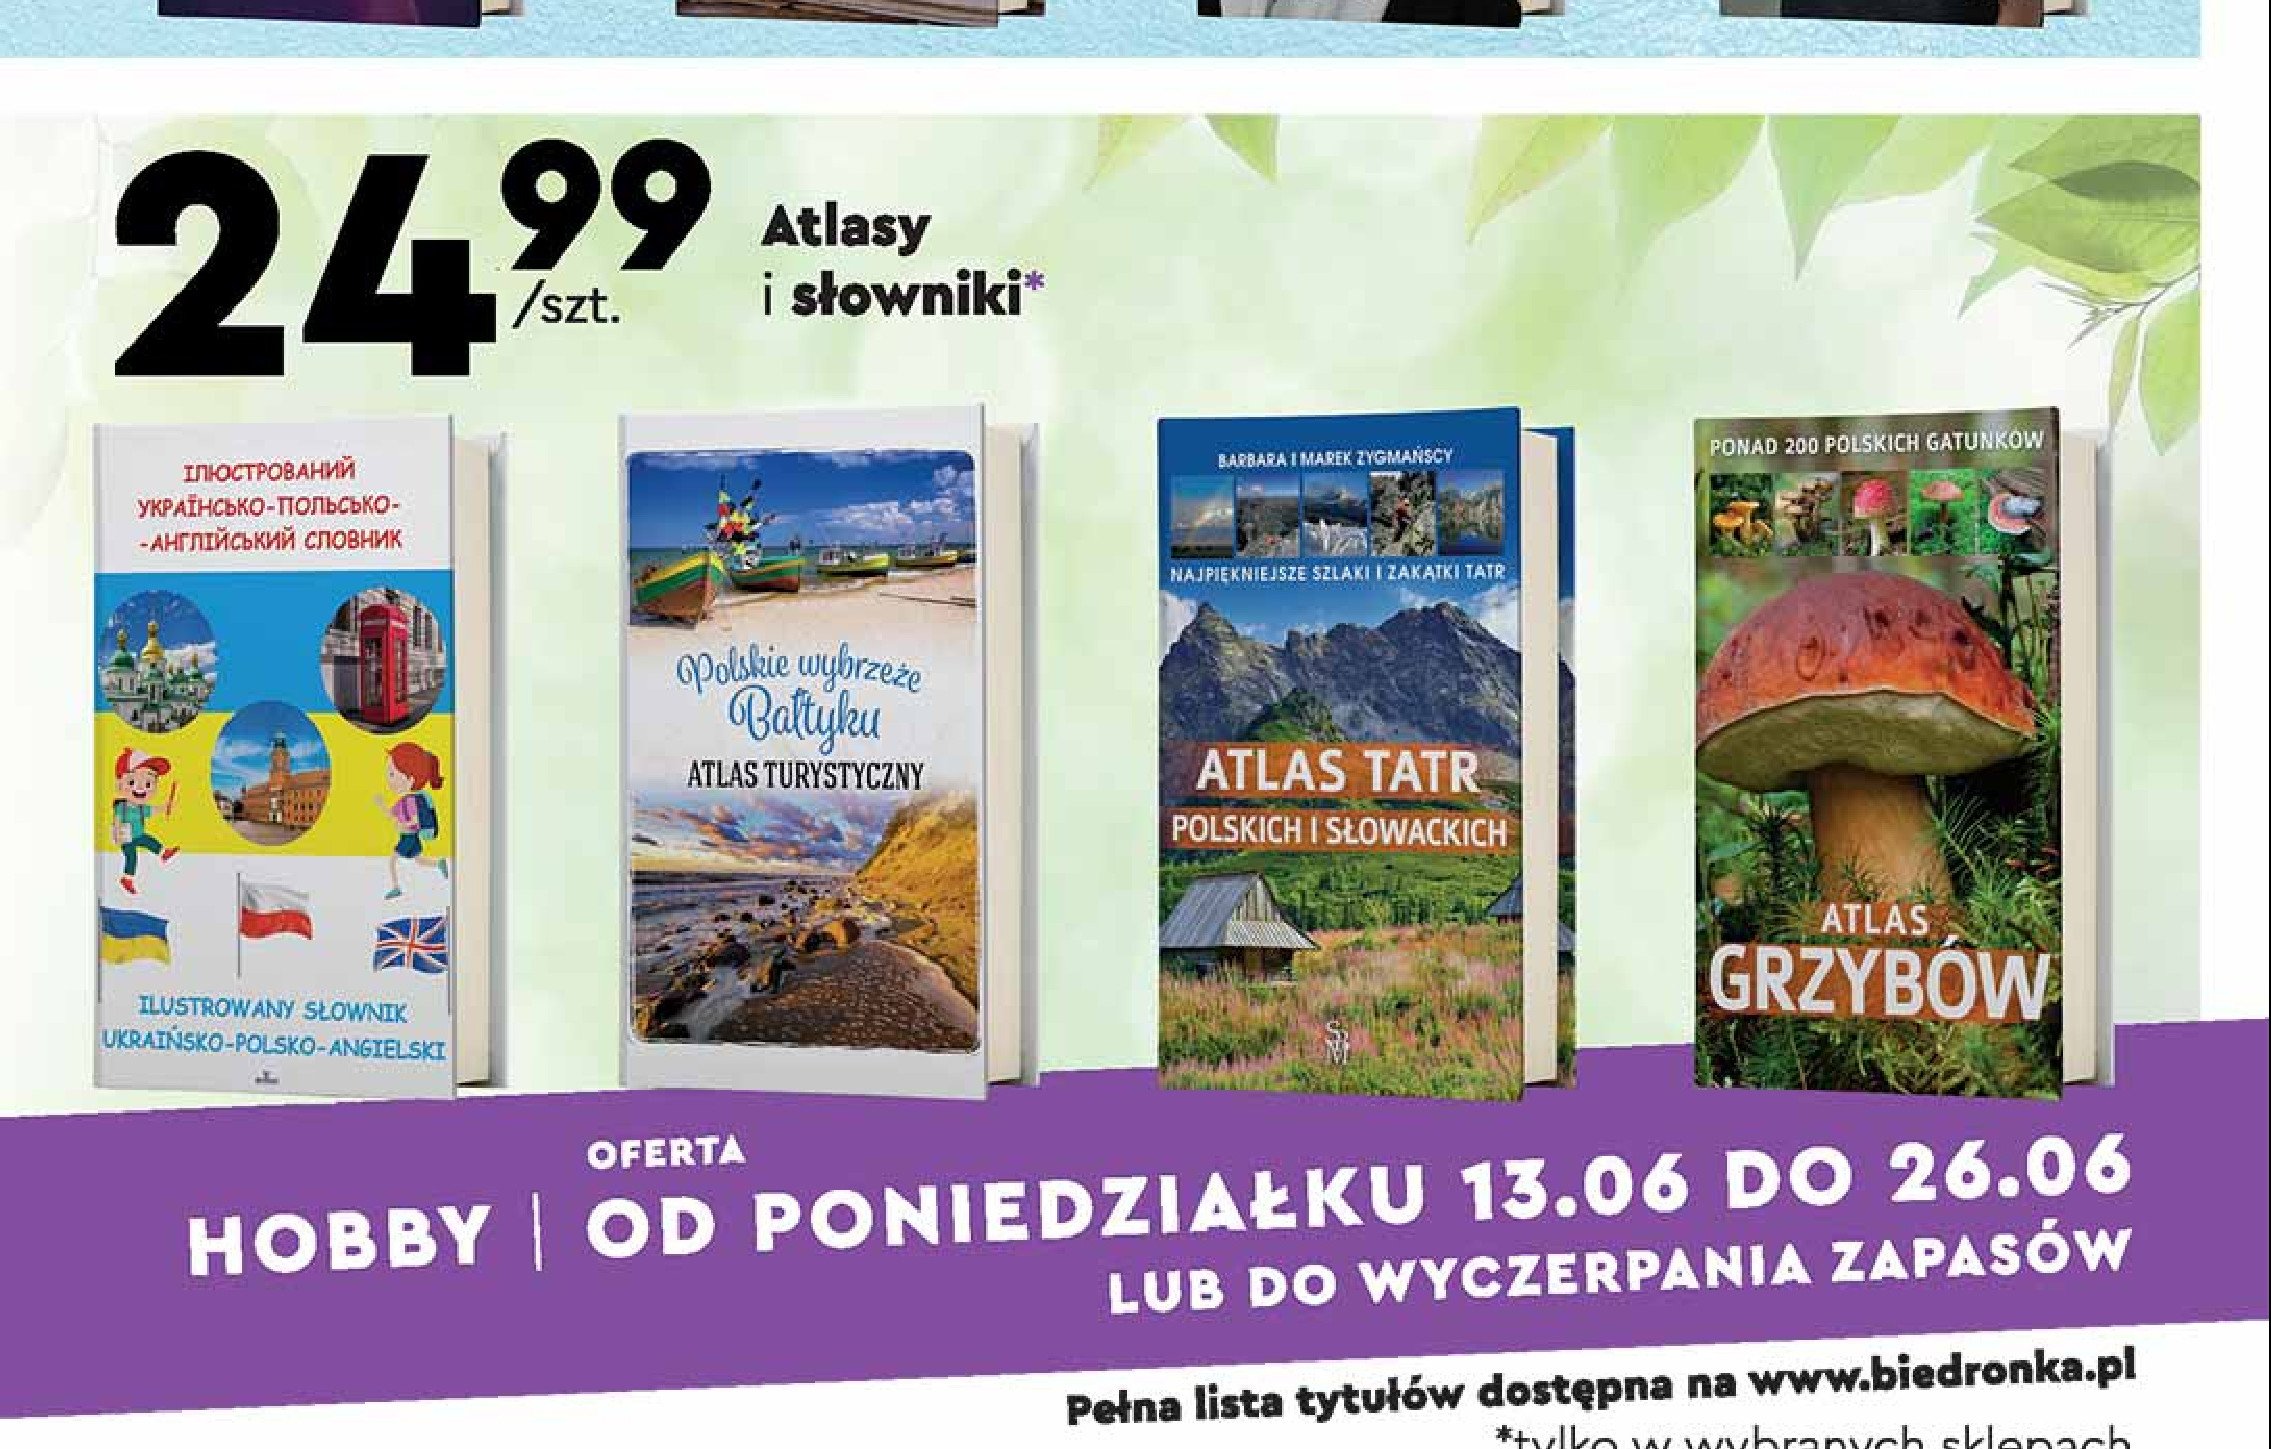 Polskie wybrzeże bałtyku - atlas turystyczny promocja